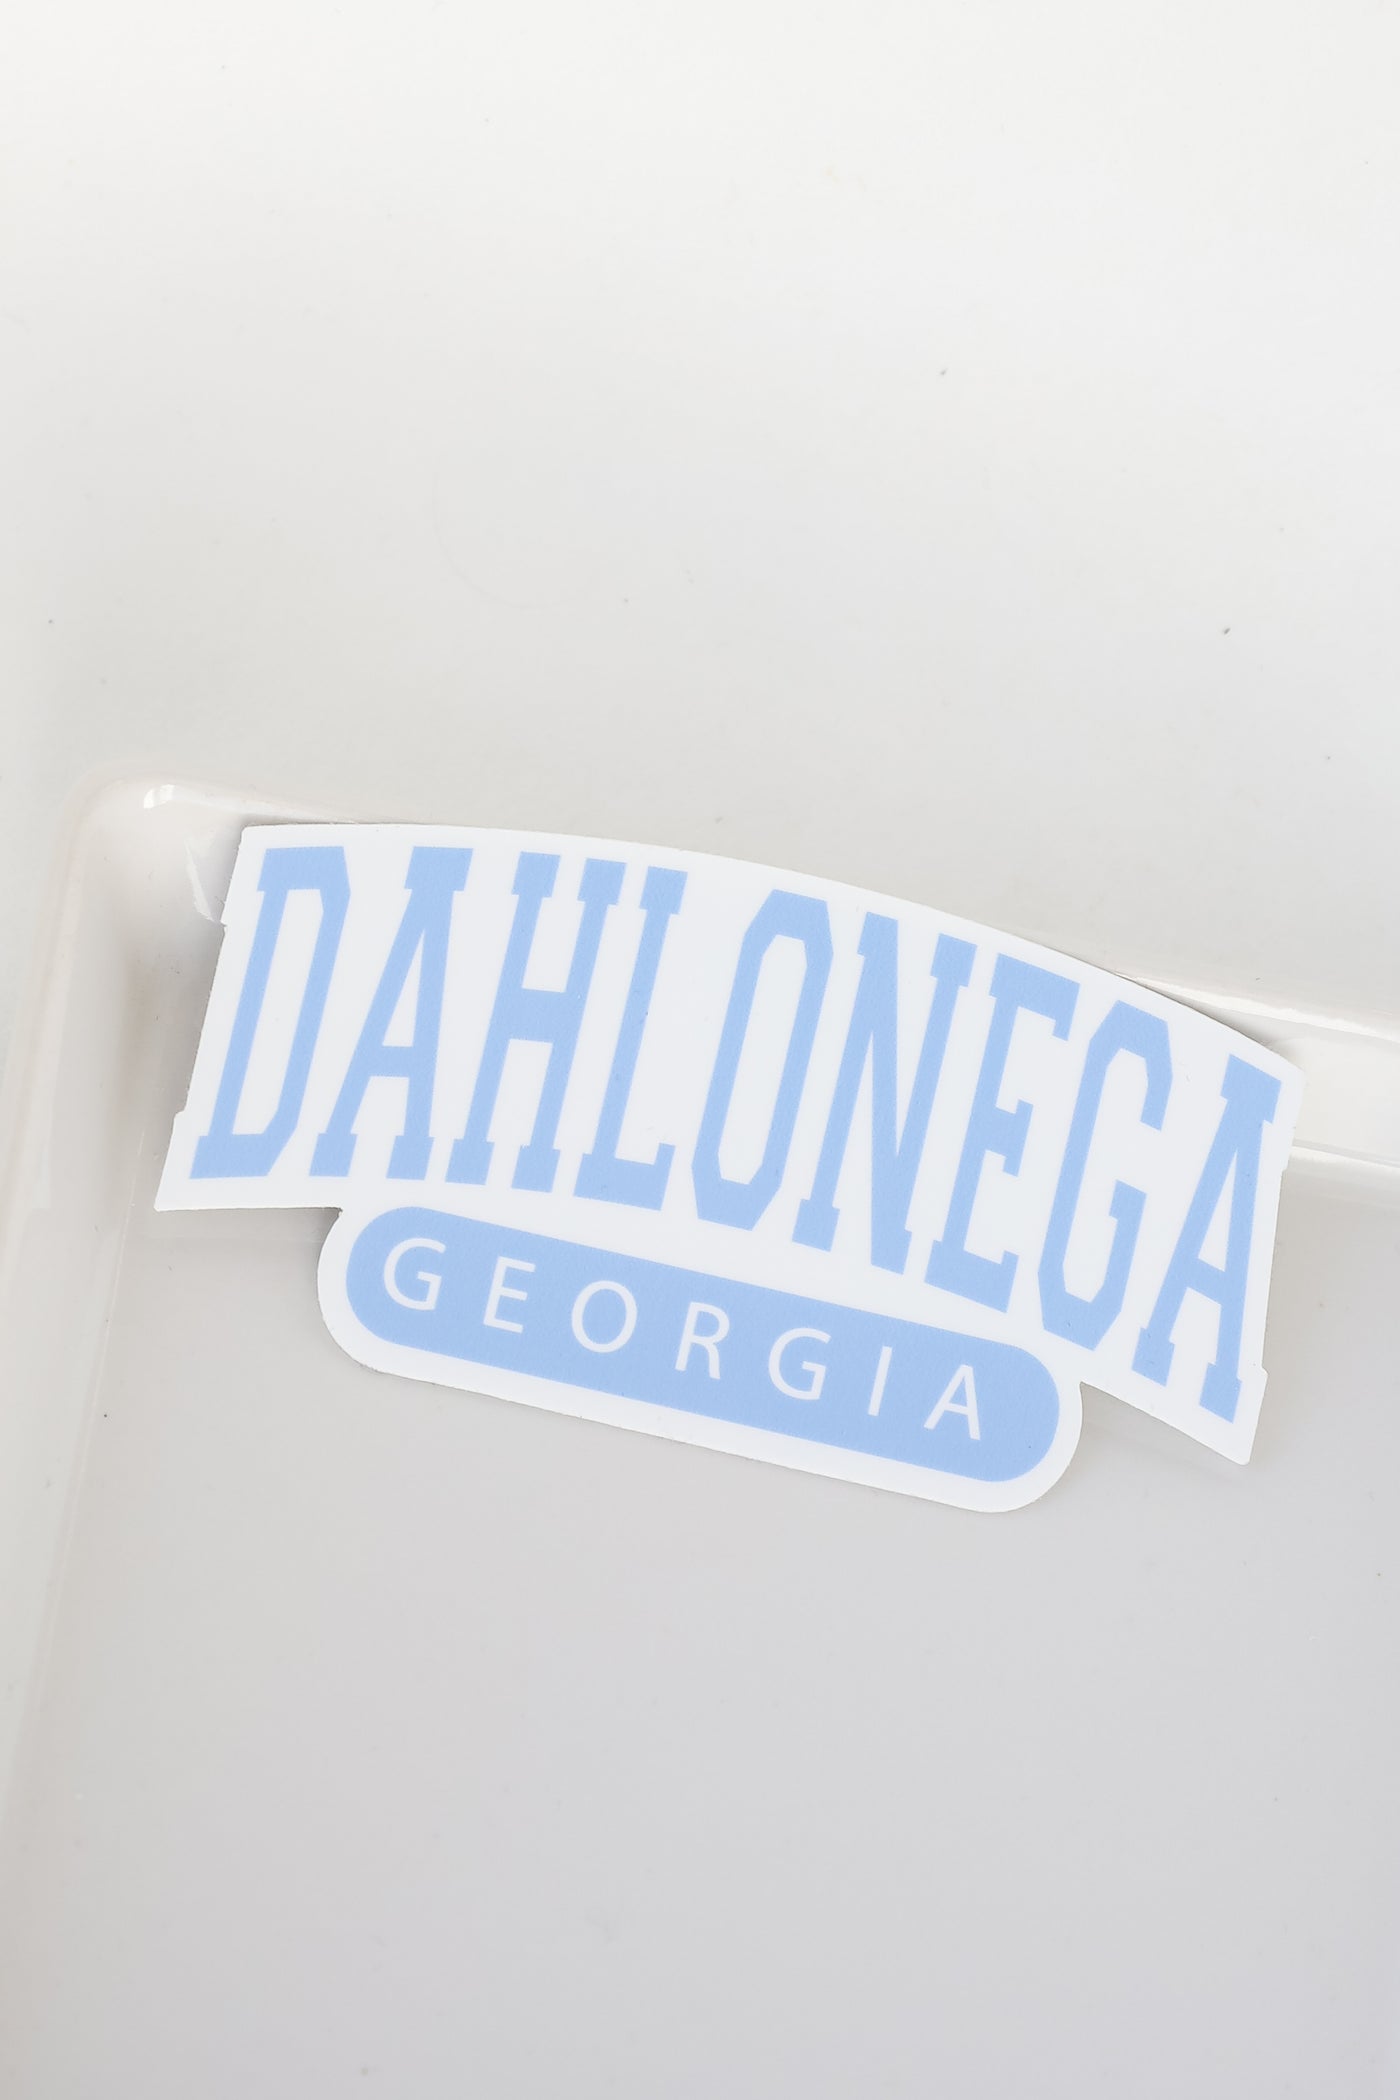 Dahlonega Georgia Sticker in blue